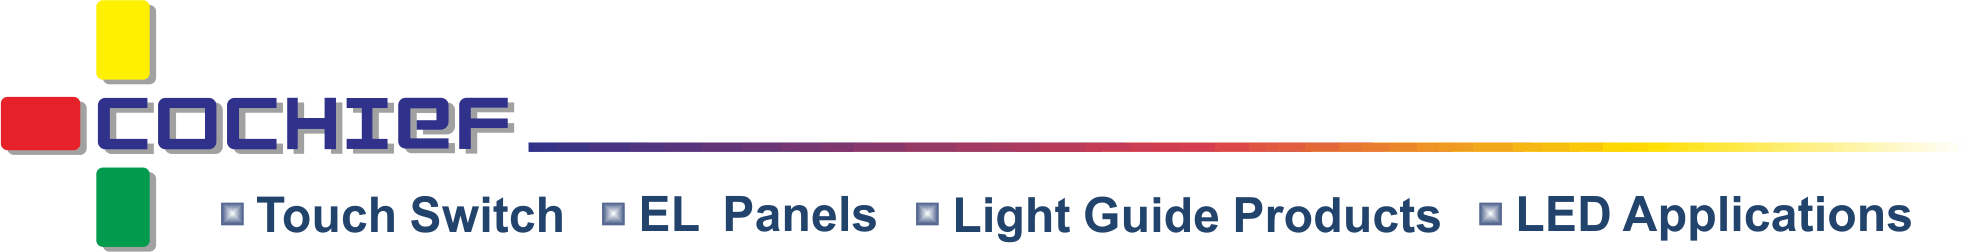 Cochief Industrial Co., Ltd. - Wir sind ein professioneller Hersteller, der einzigartige und vielseitige intelligente Beleuchtungs-Touch-Schaltmodule, Lichtleitfolien und EL-Panels anbietet.